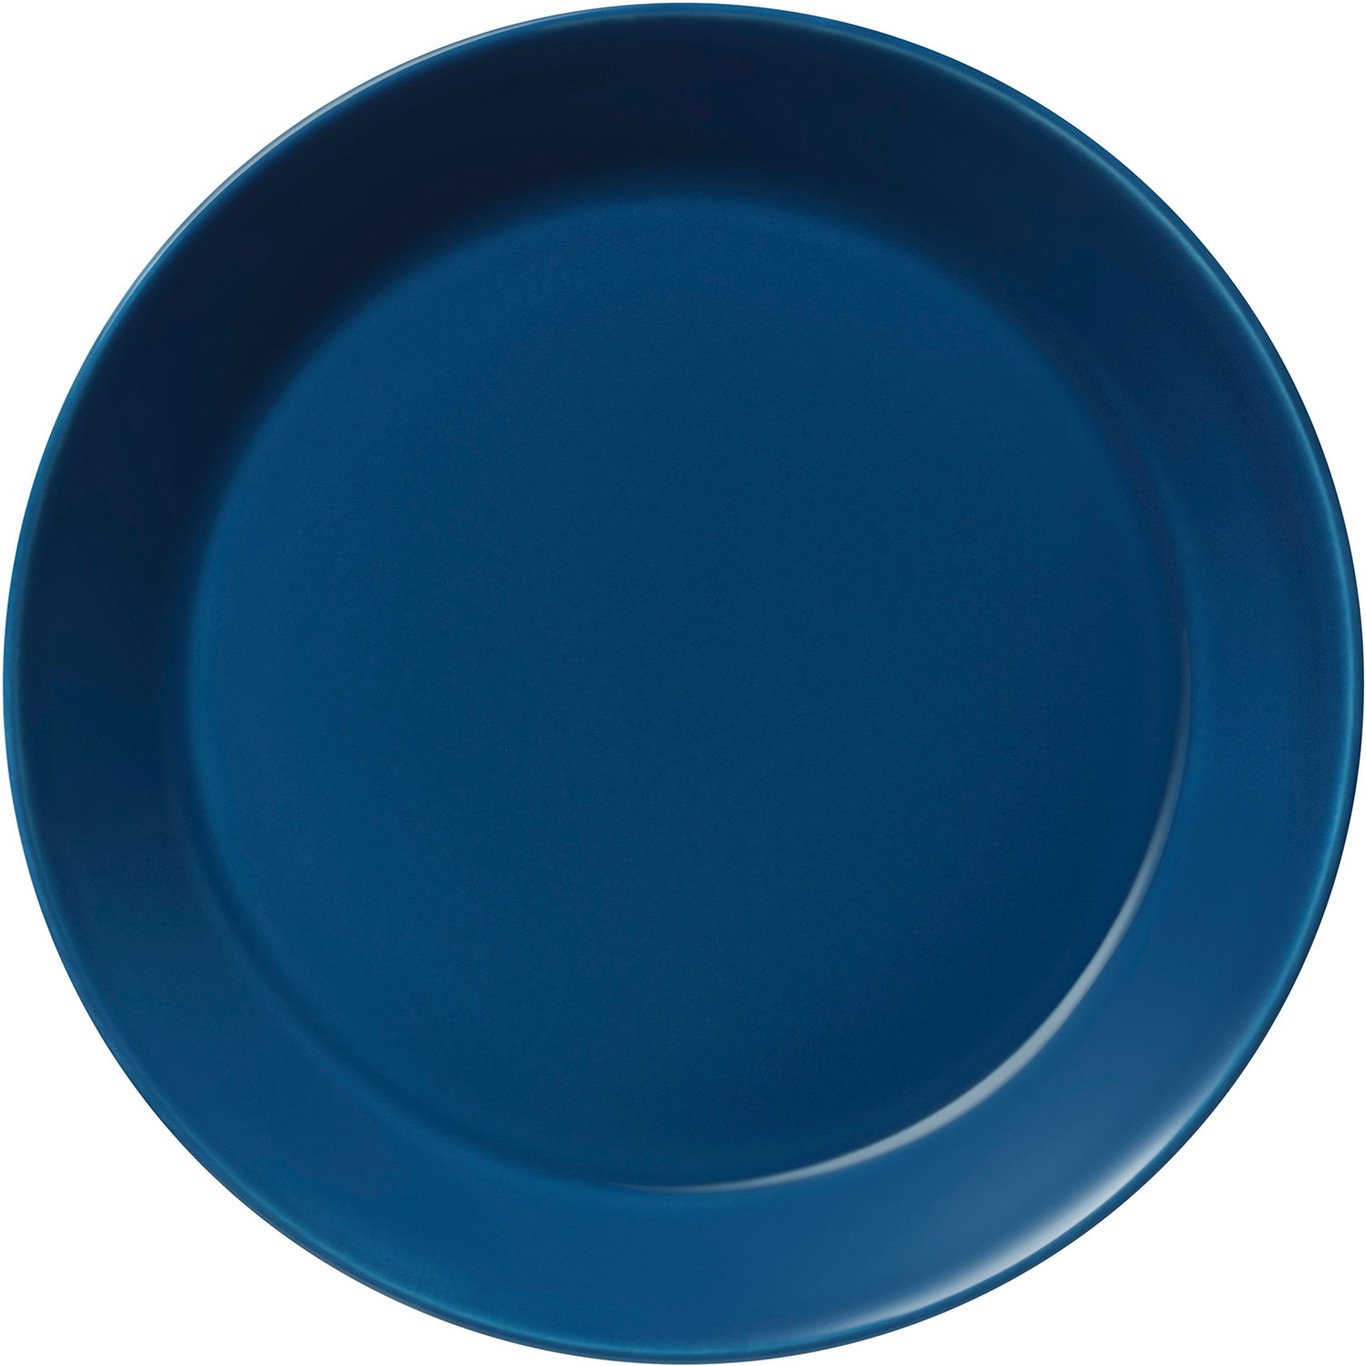 Teema Plate 21 cm, Vintage Blue